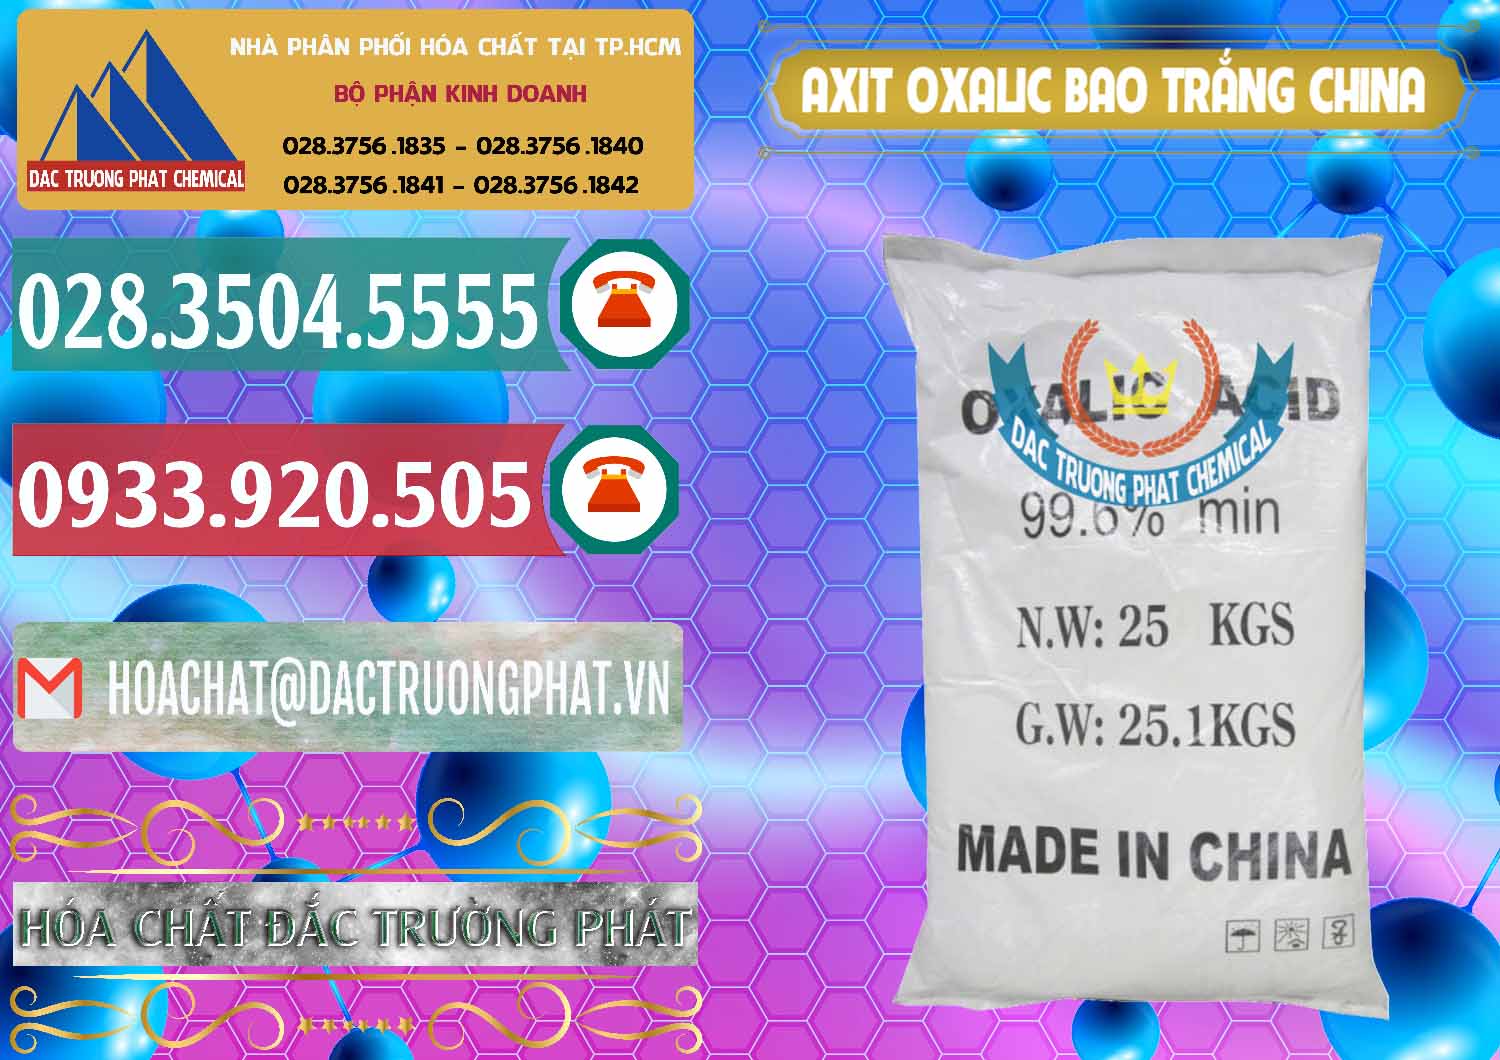 Nhà cung cấp và bán Acid Oxalic – Axit Oxalic 99.6% Bao Trắng Trung Quốc China - 0270 - Đơn vị chuyên phân phối & bán hóa chất tại TP.HCM - muabanhoachat.vn